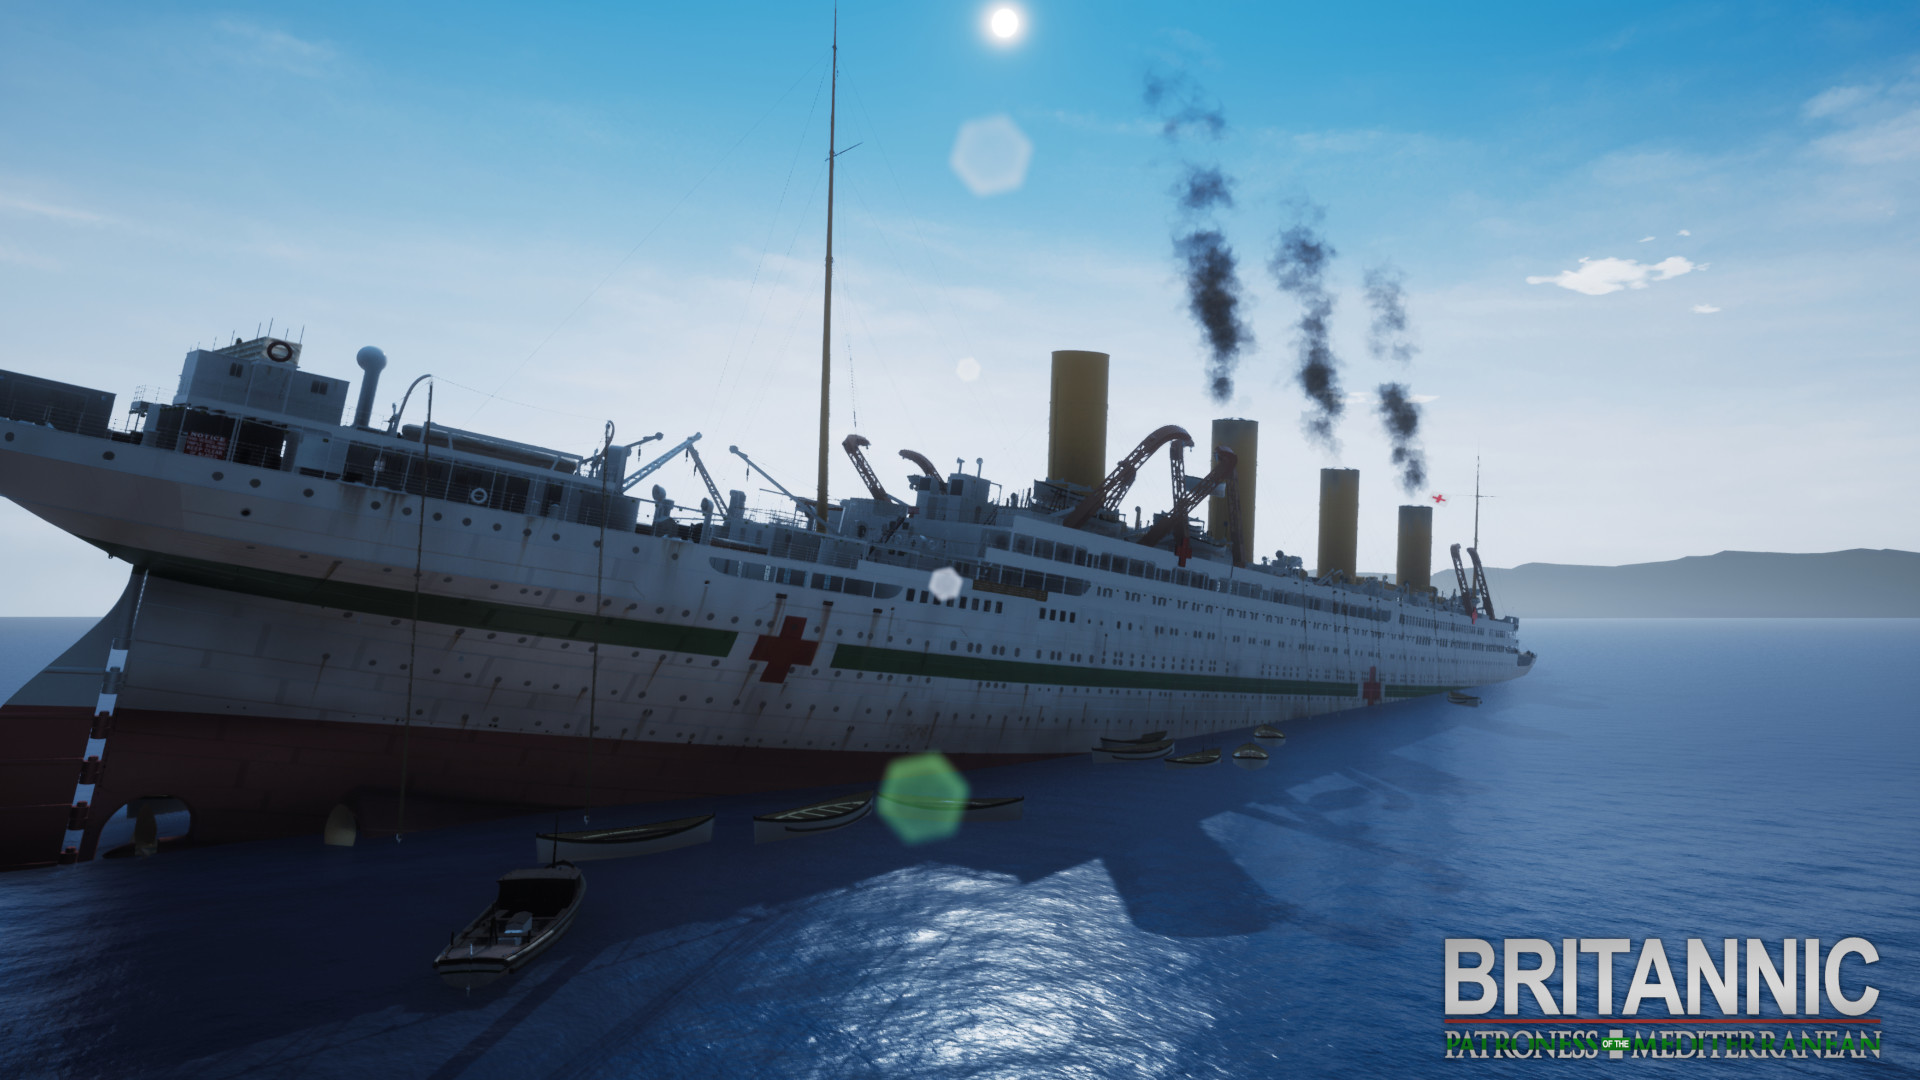 Britannic Patroness Of The Mediterranean On Steam - britannic simulation museum roblox